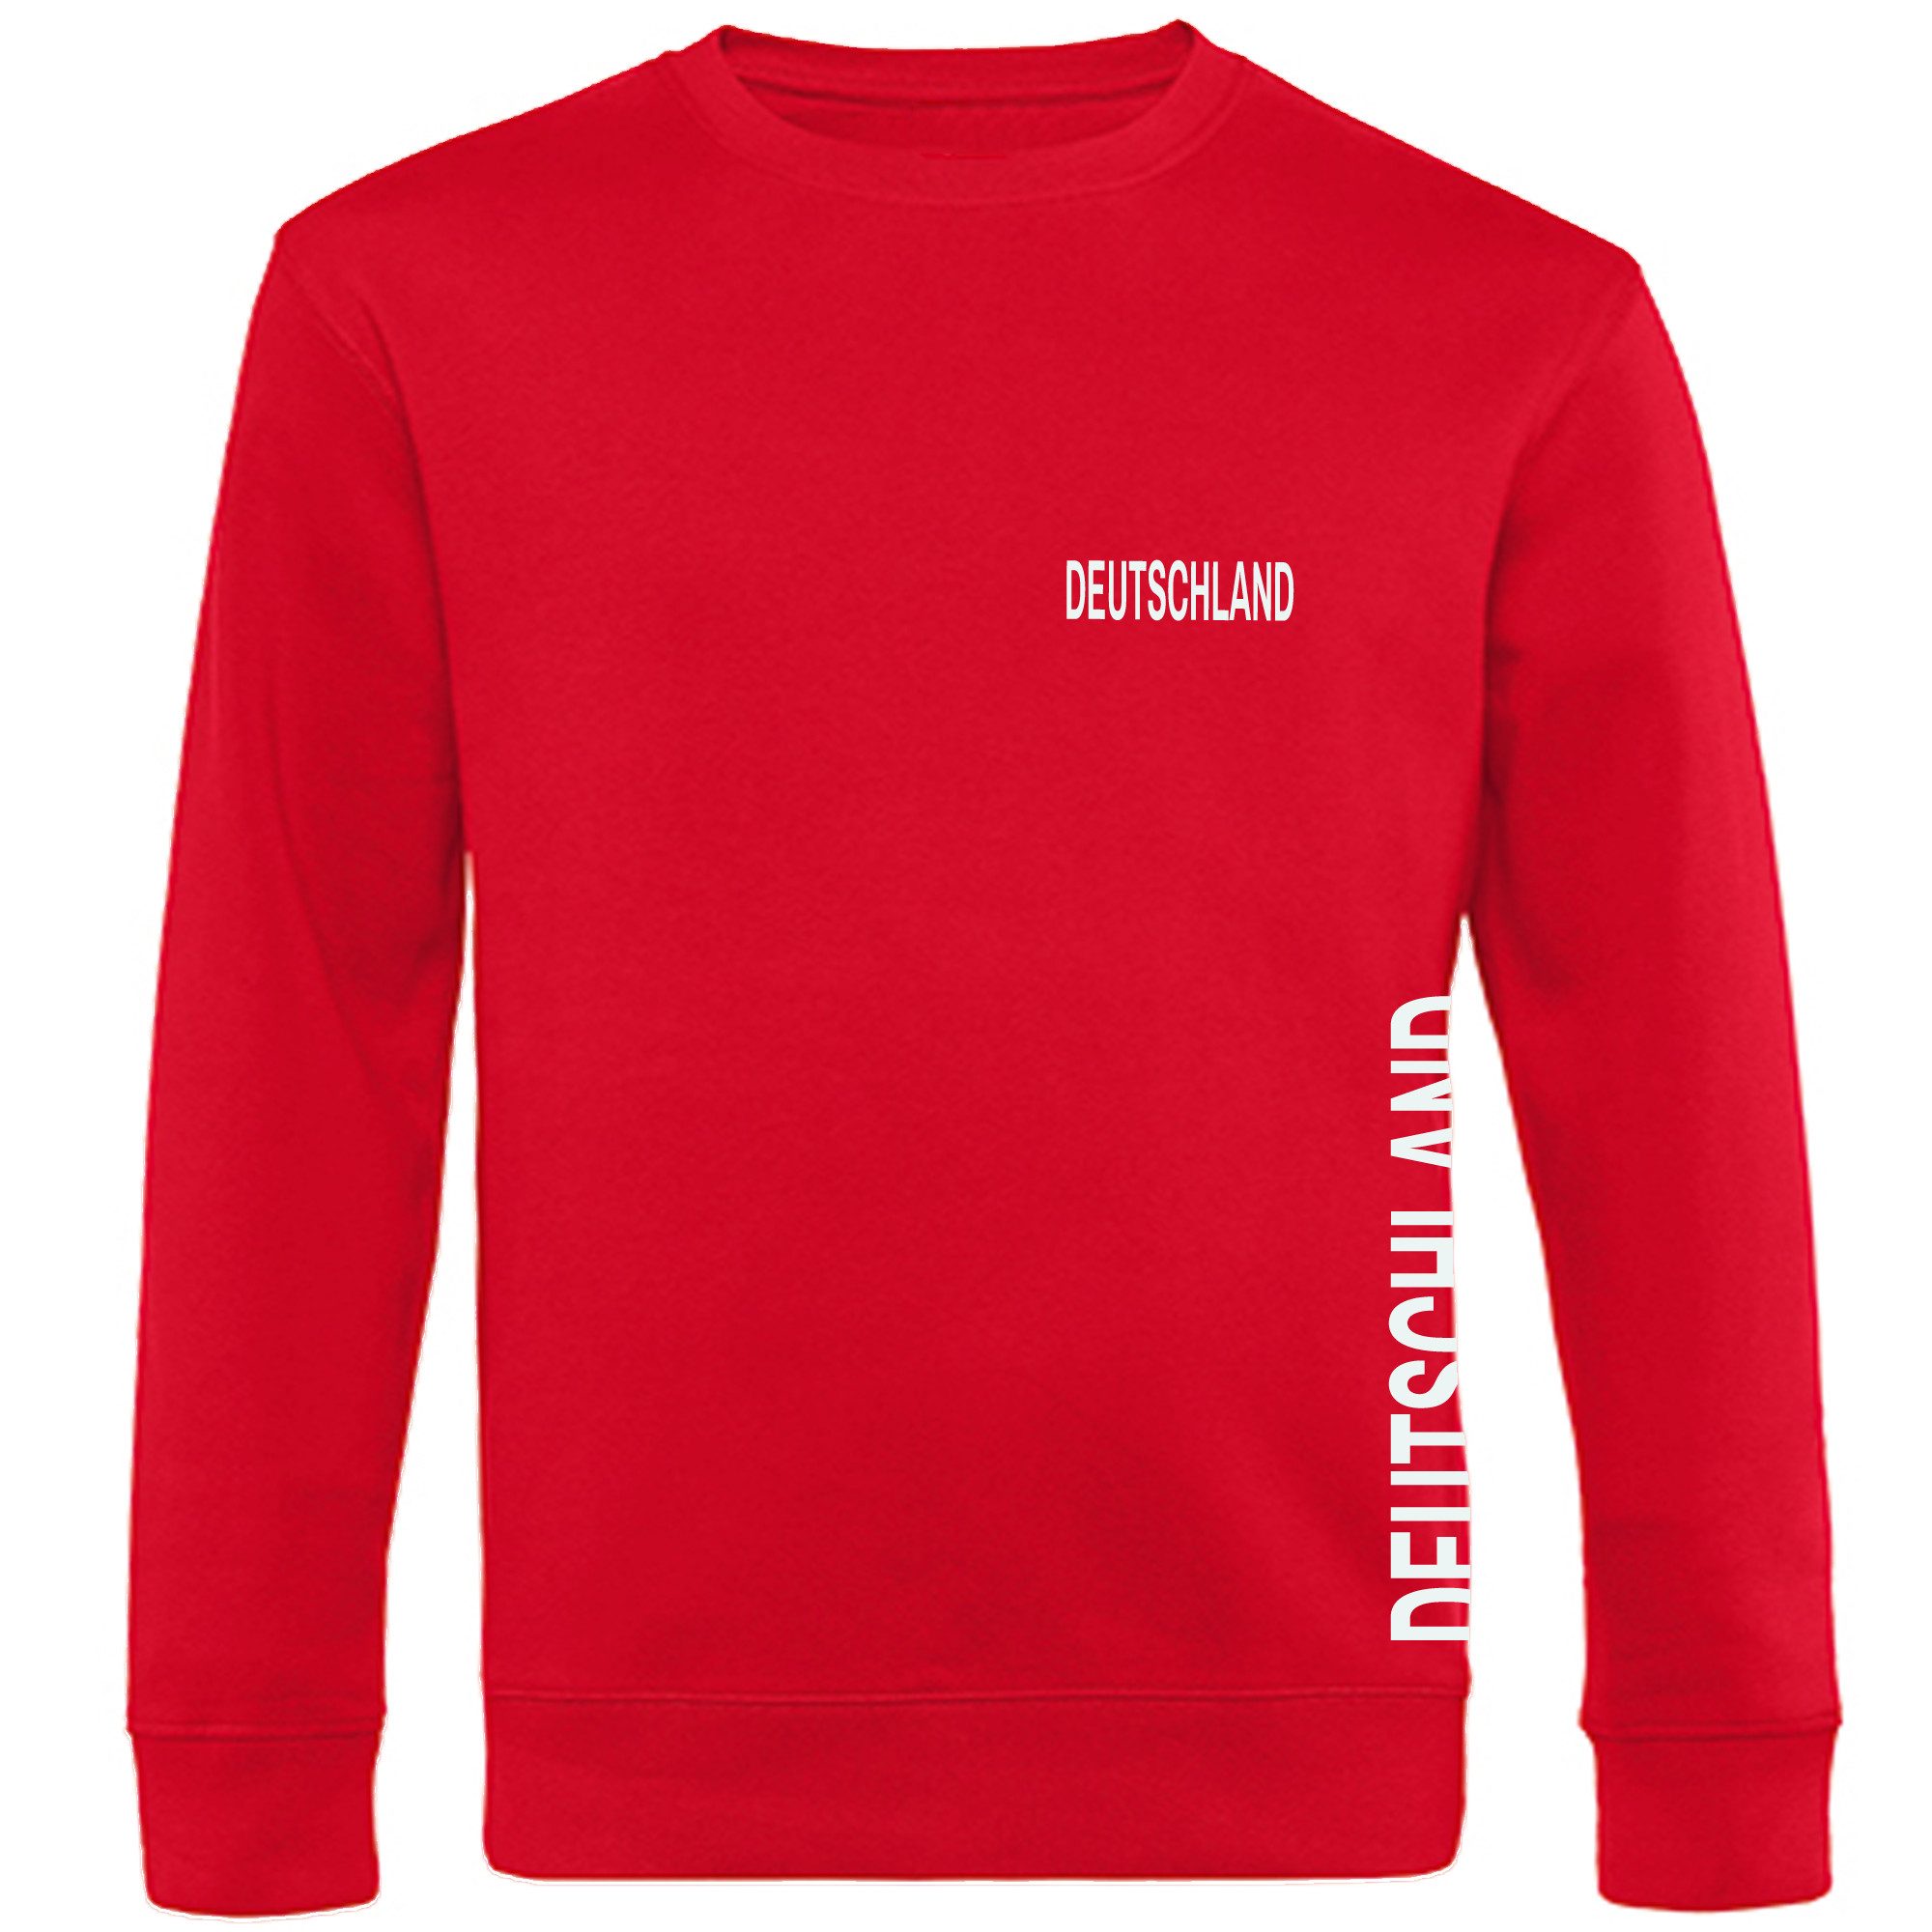 multifanshop Sweatshirt Deutschland - Brust & Seite - Pullover